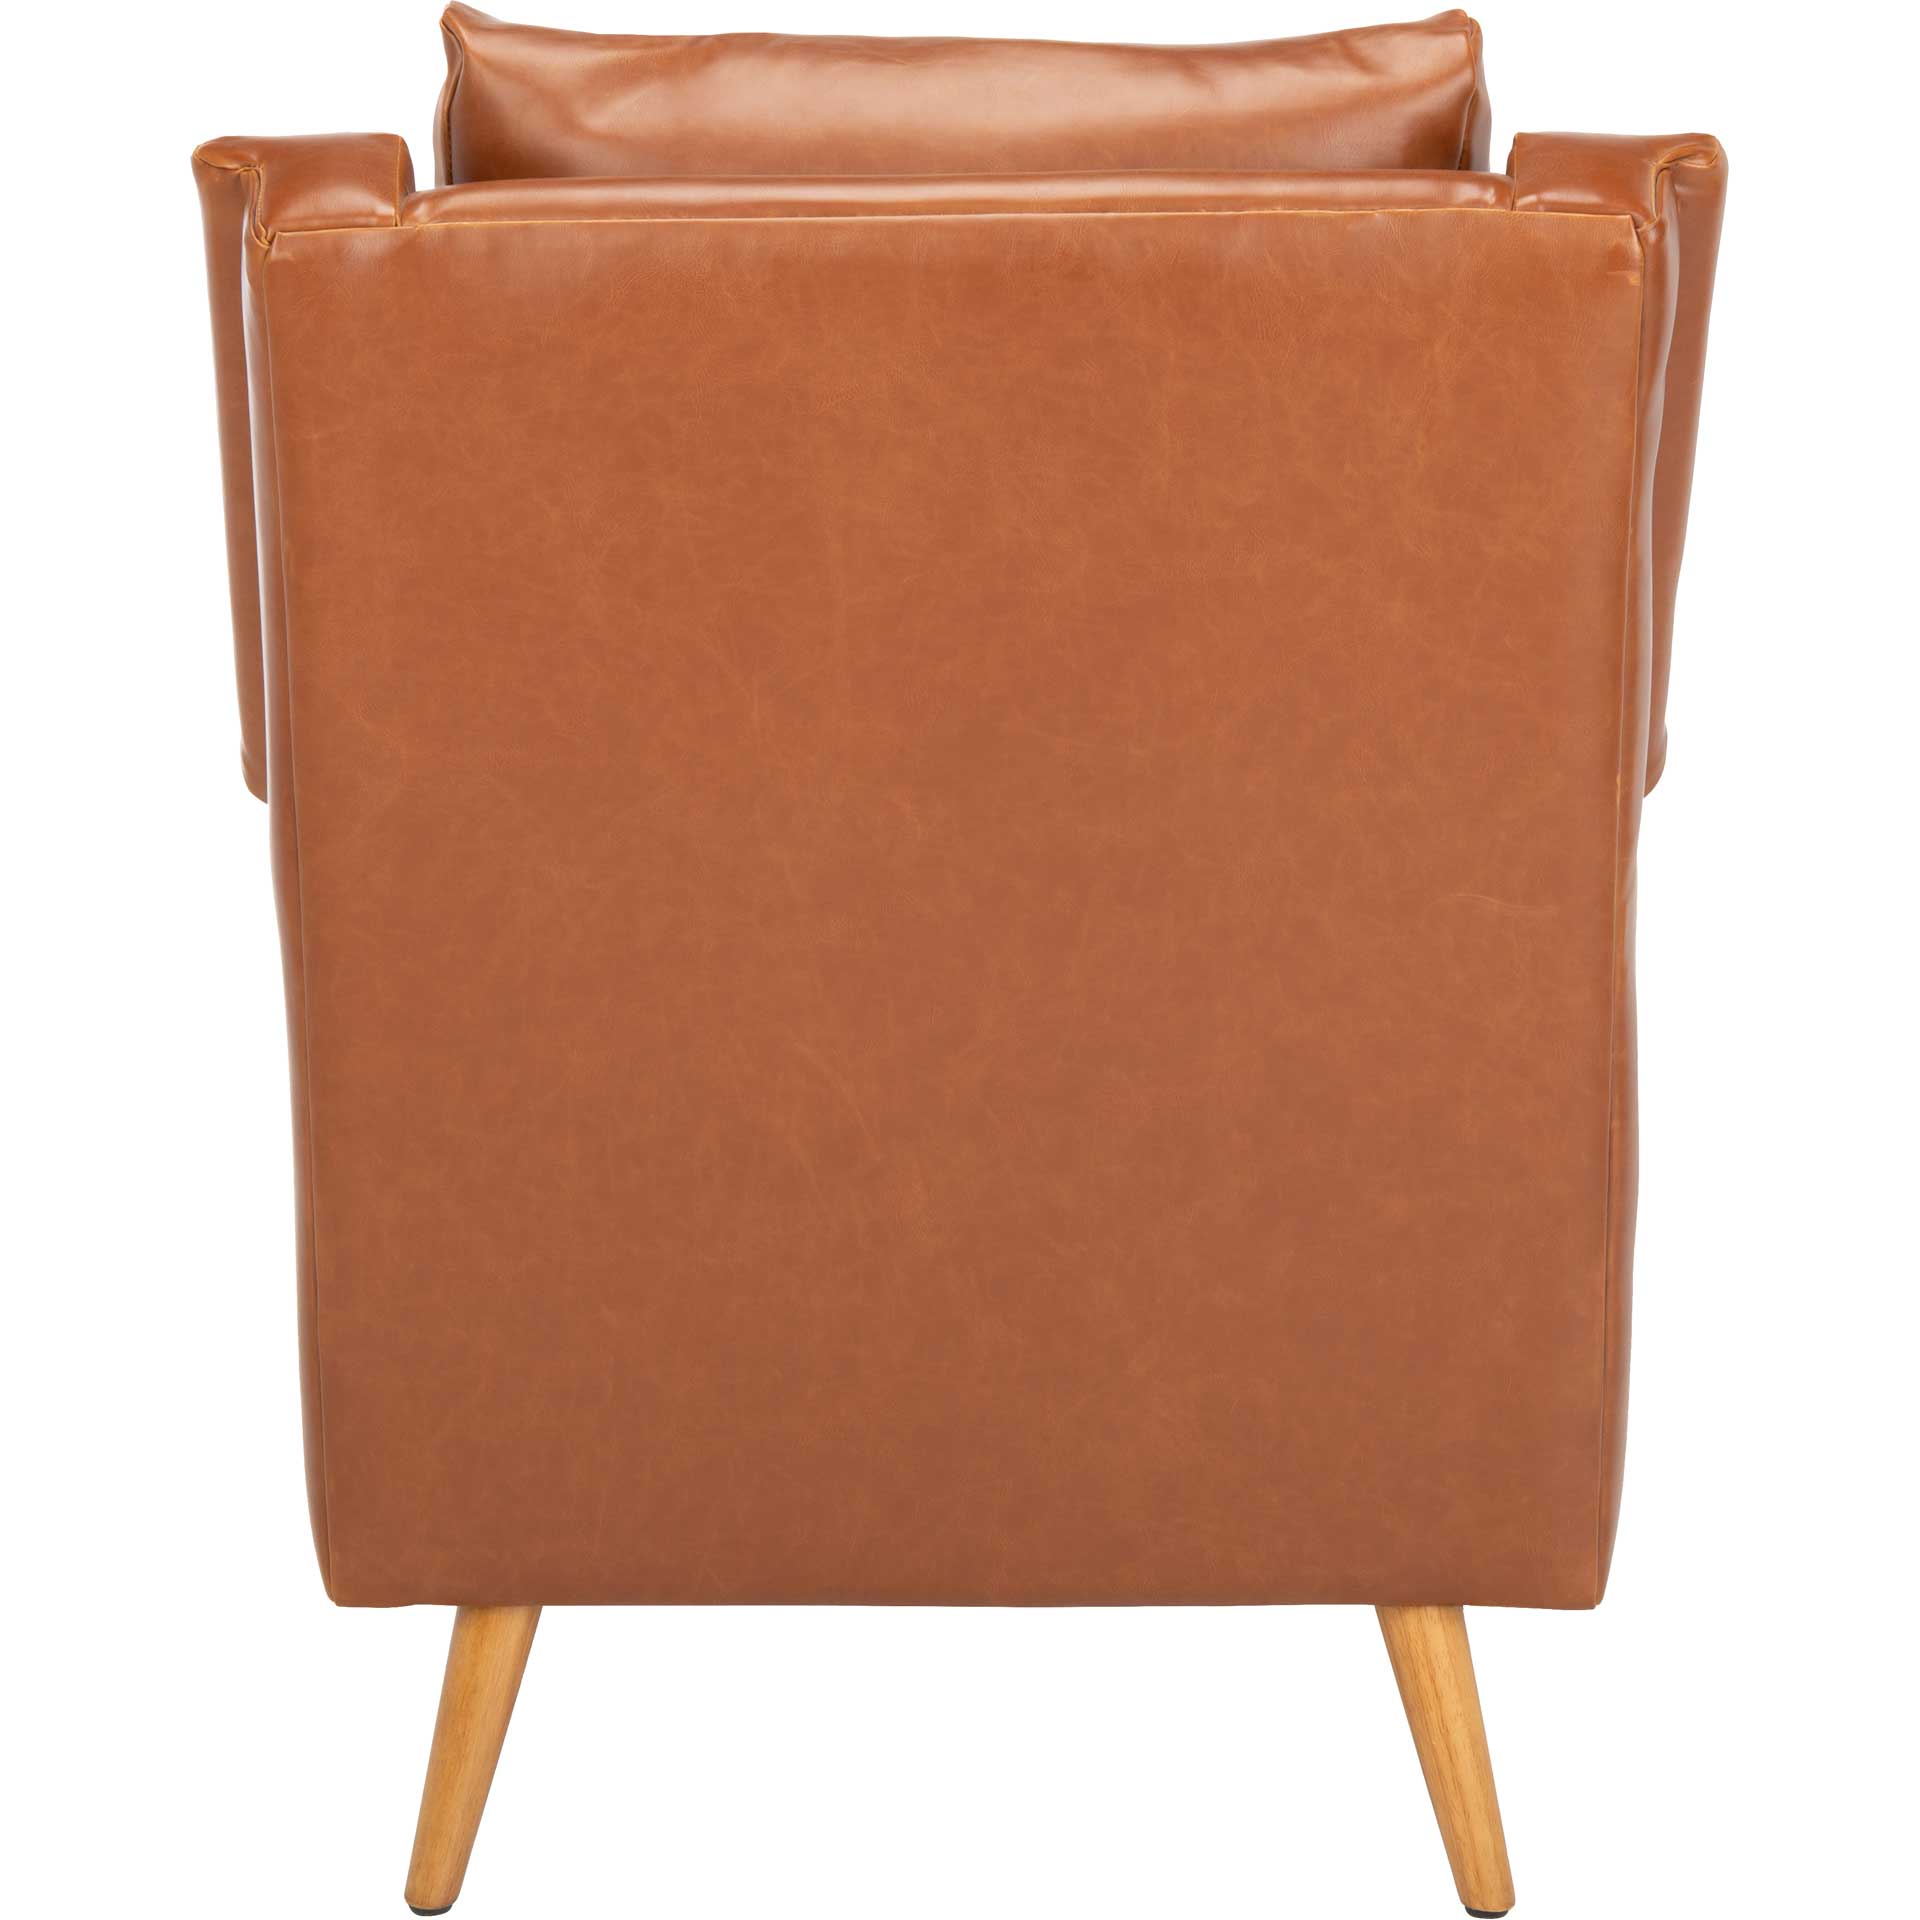 Aspen Mid Century Arm Chair Cognac/Natural